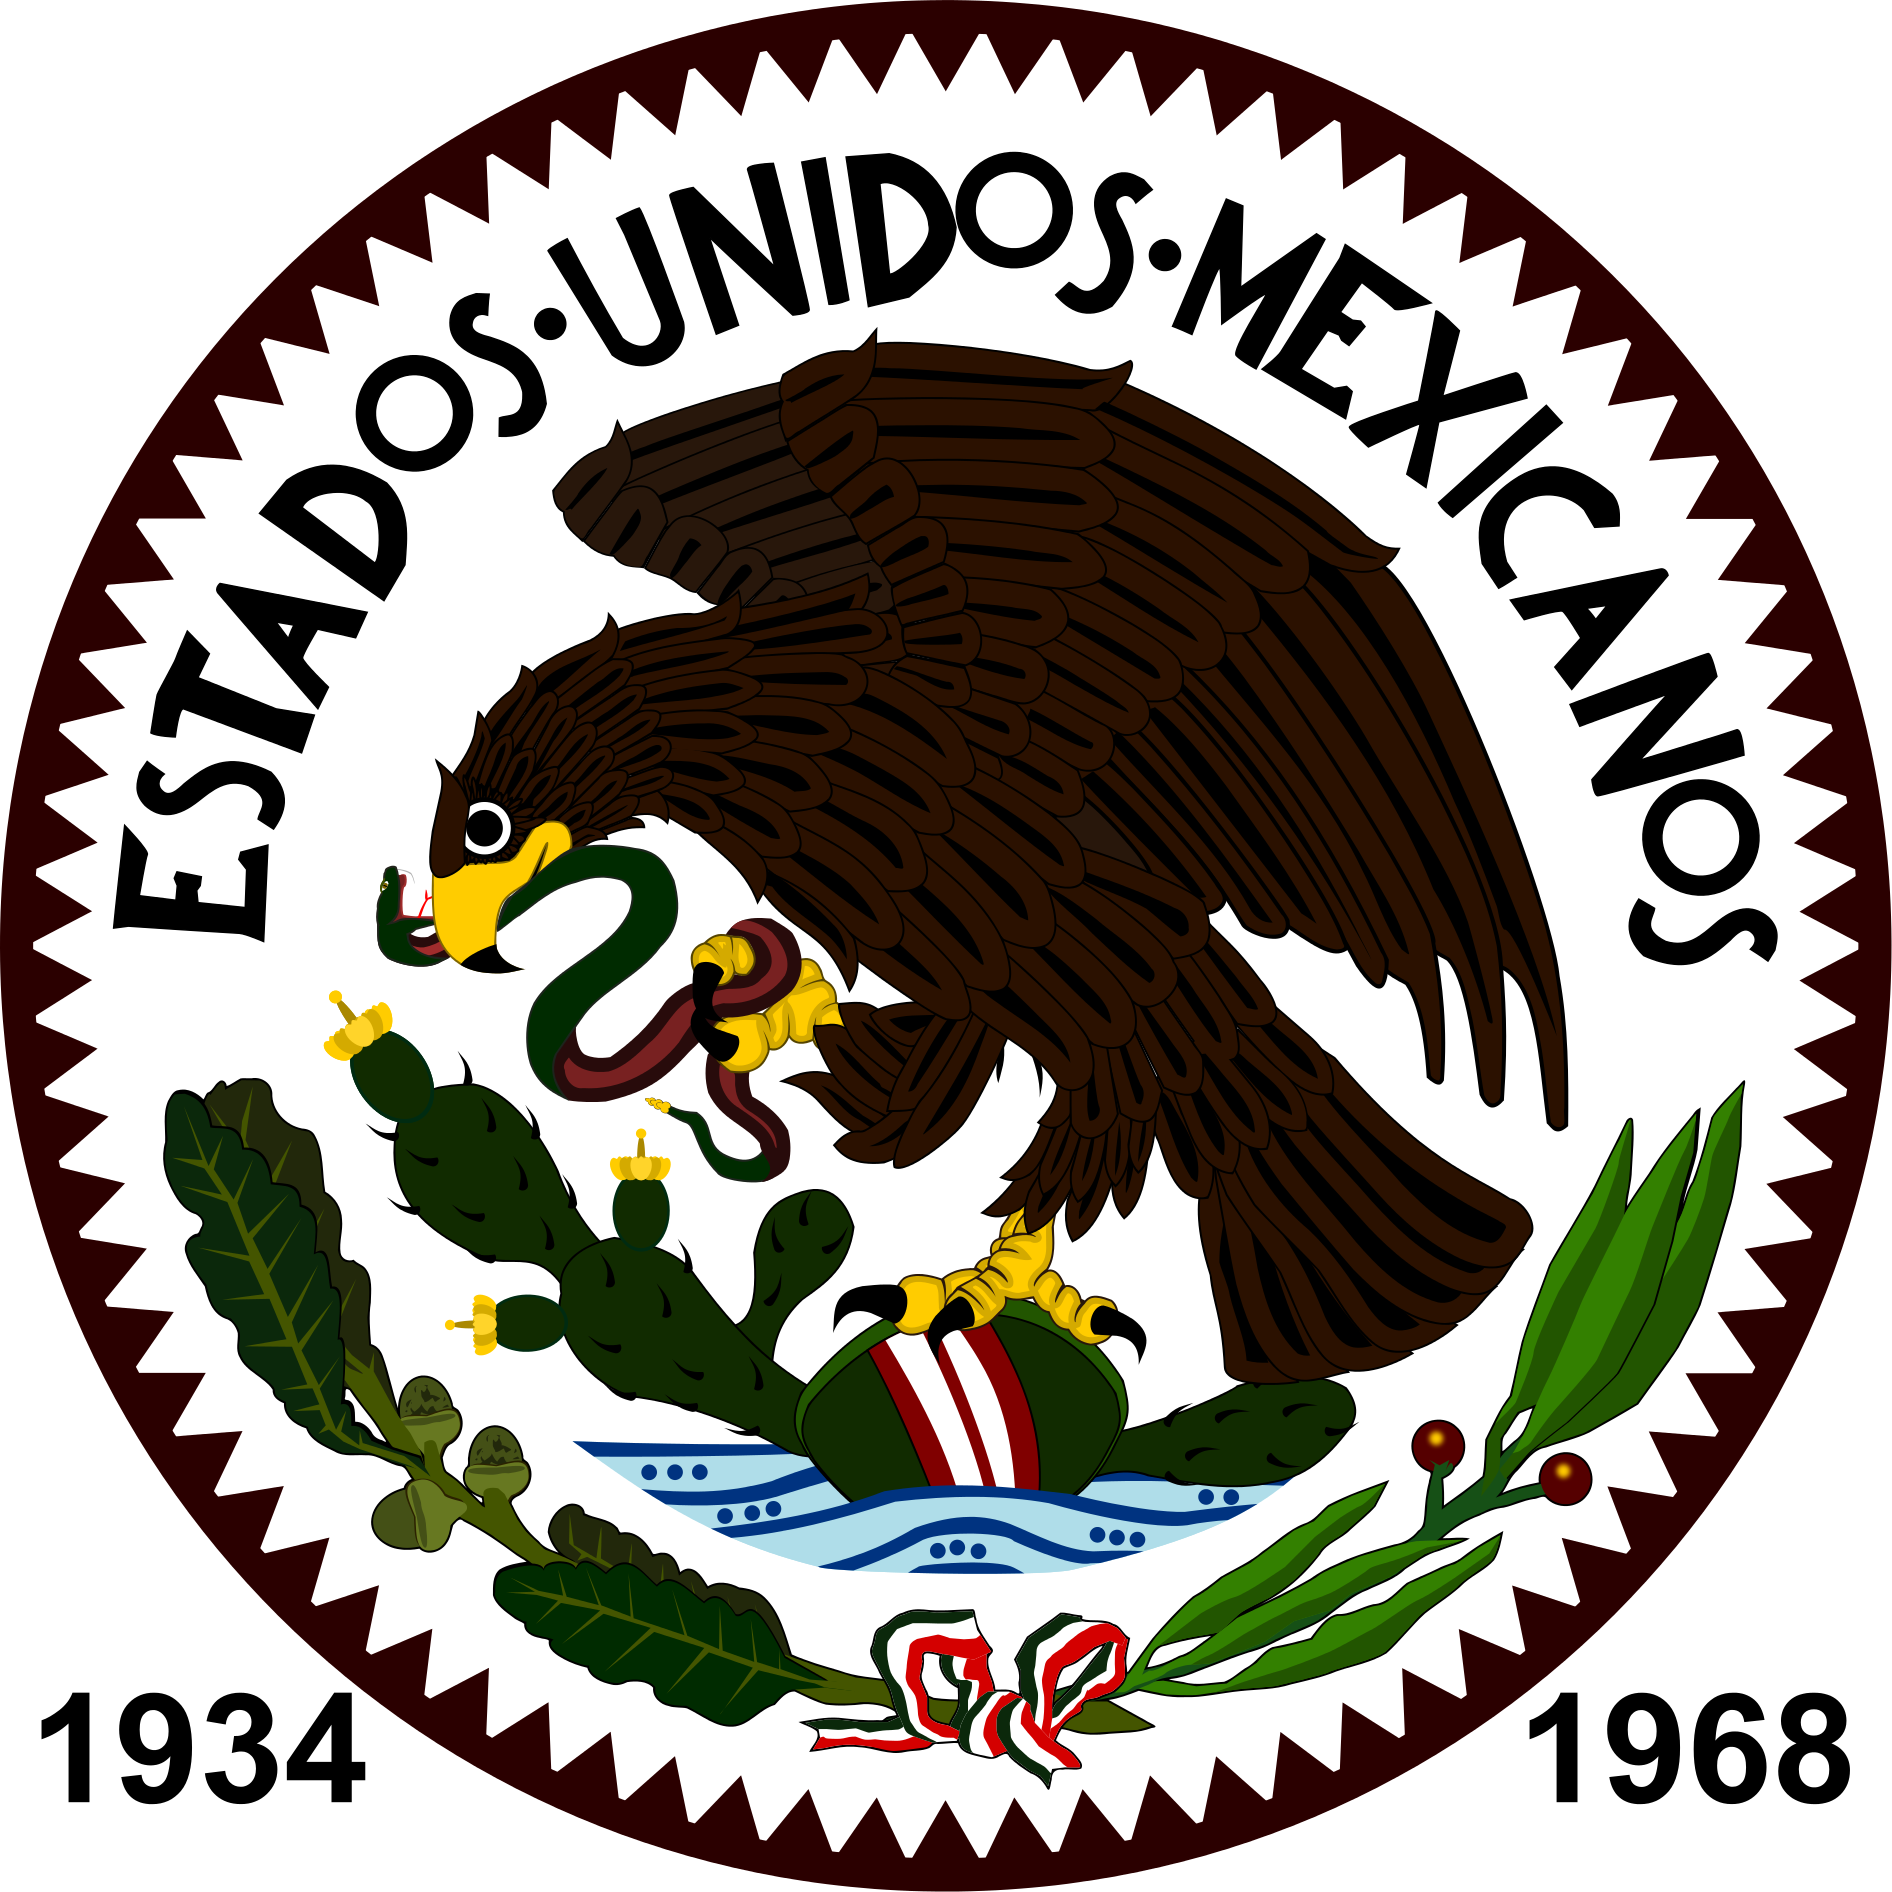 Escudo De Estados Unidos Mexicanos - Romania Football Federation Logo (1892x1892), Png Download